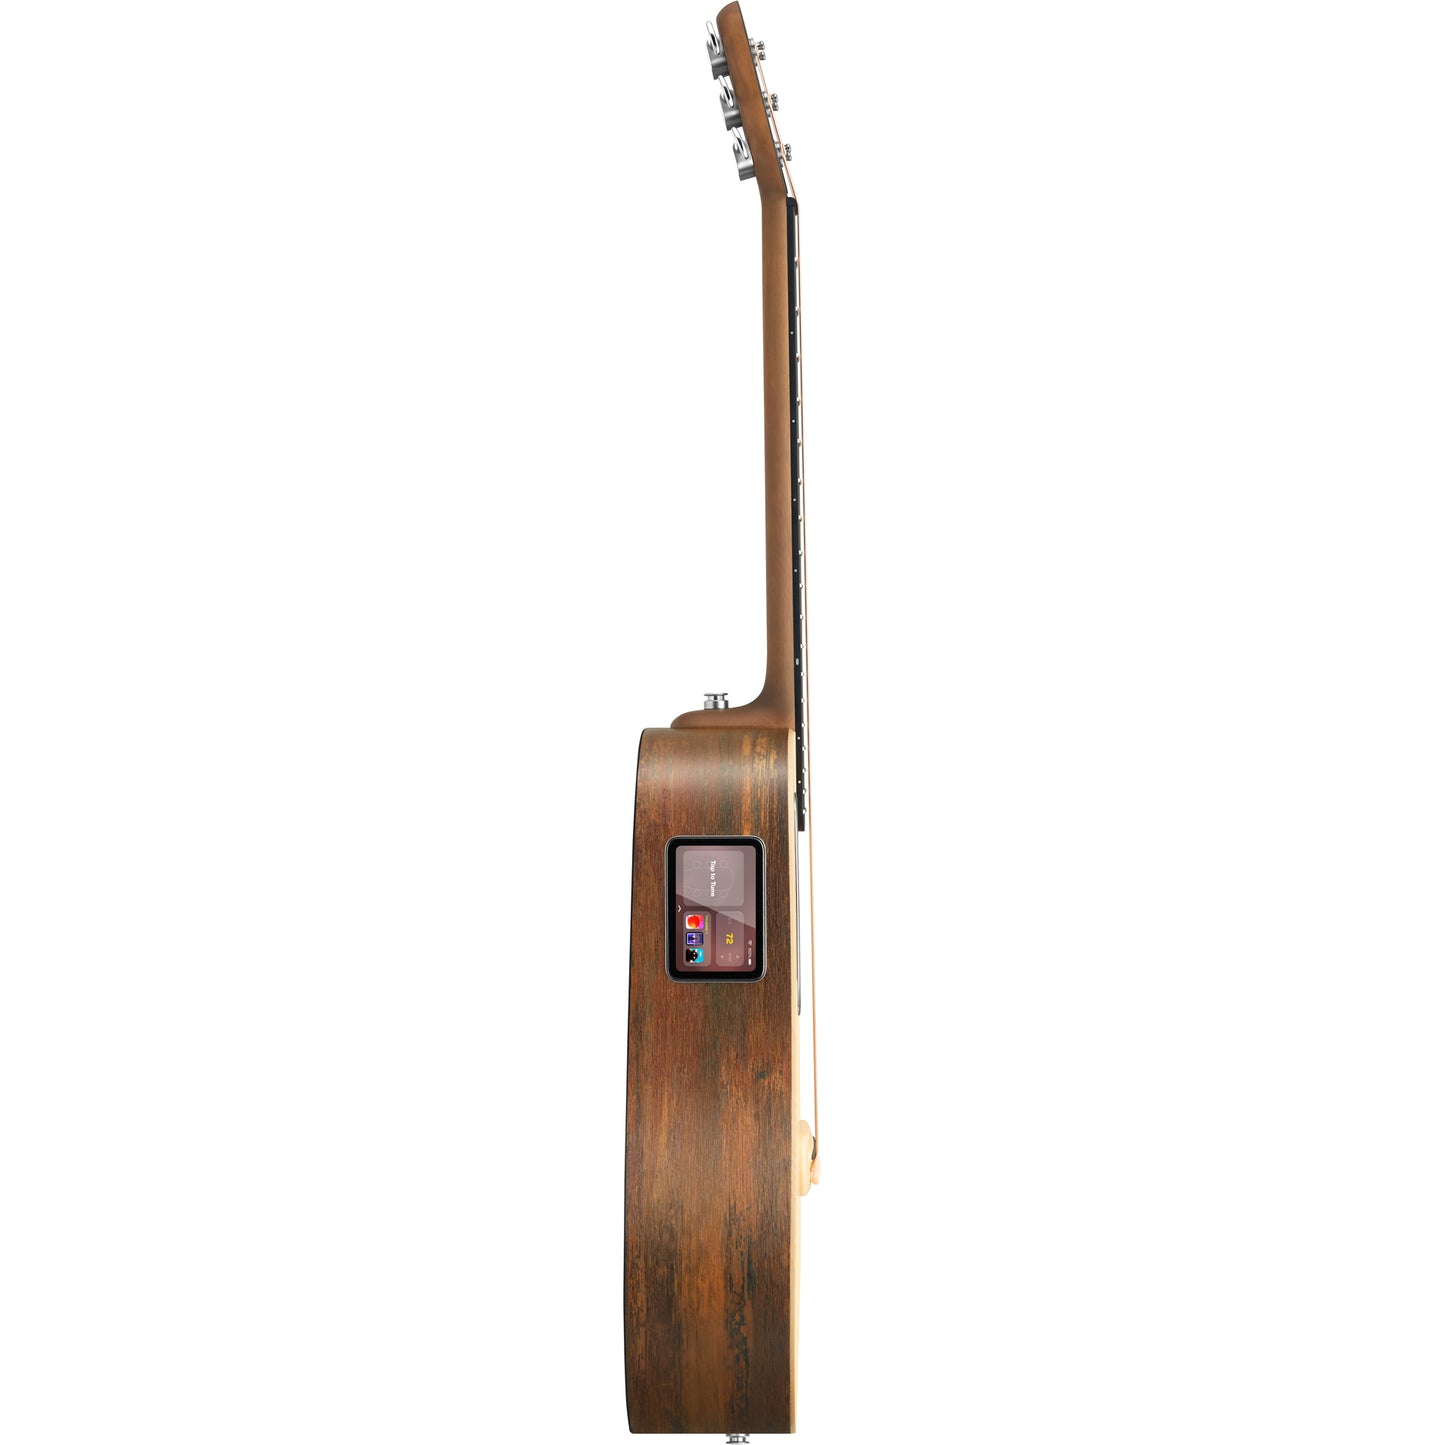 Lava Music ME 4 36” Spruce Series Guitar - Woodgrain Brown & Burlywood